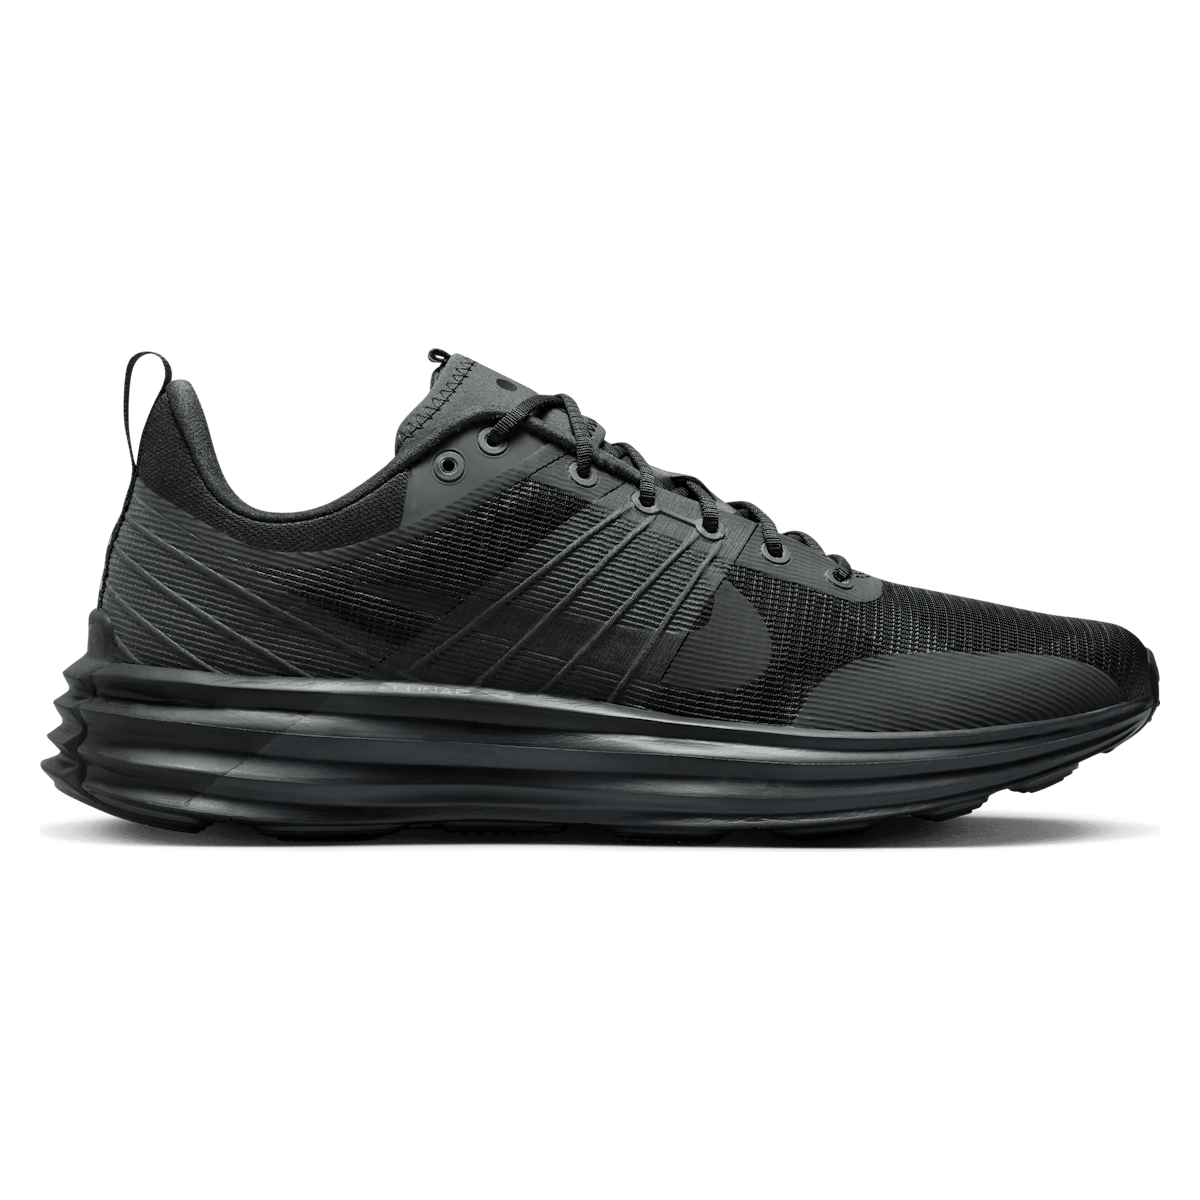 Nike Lunar Roam Dark Smoke Grey Black